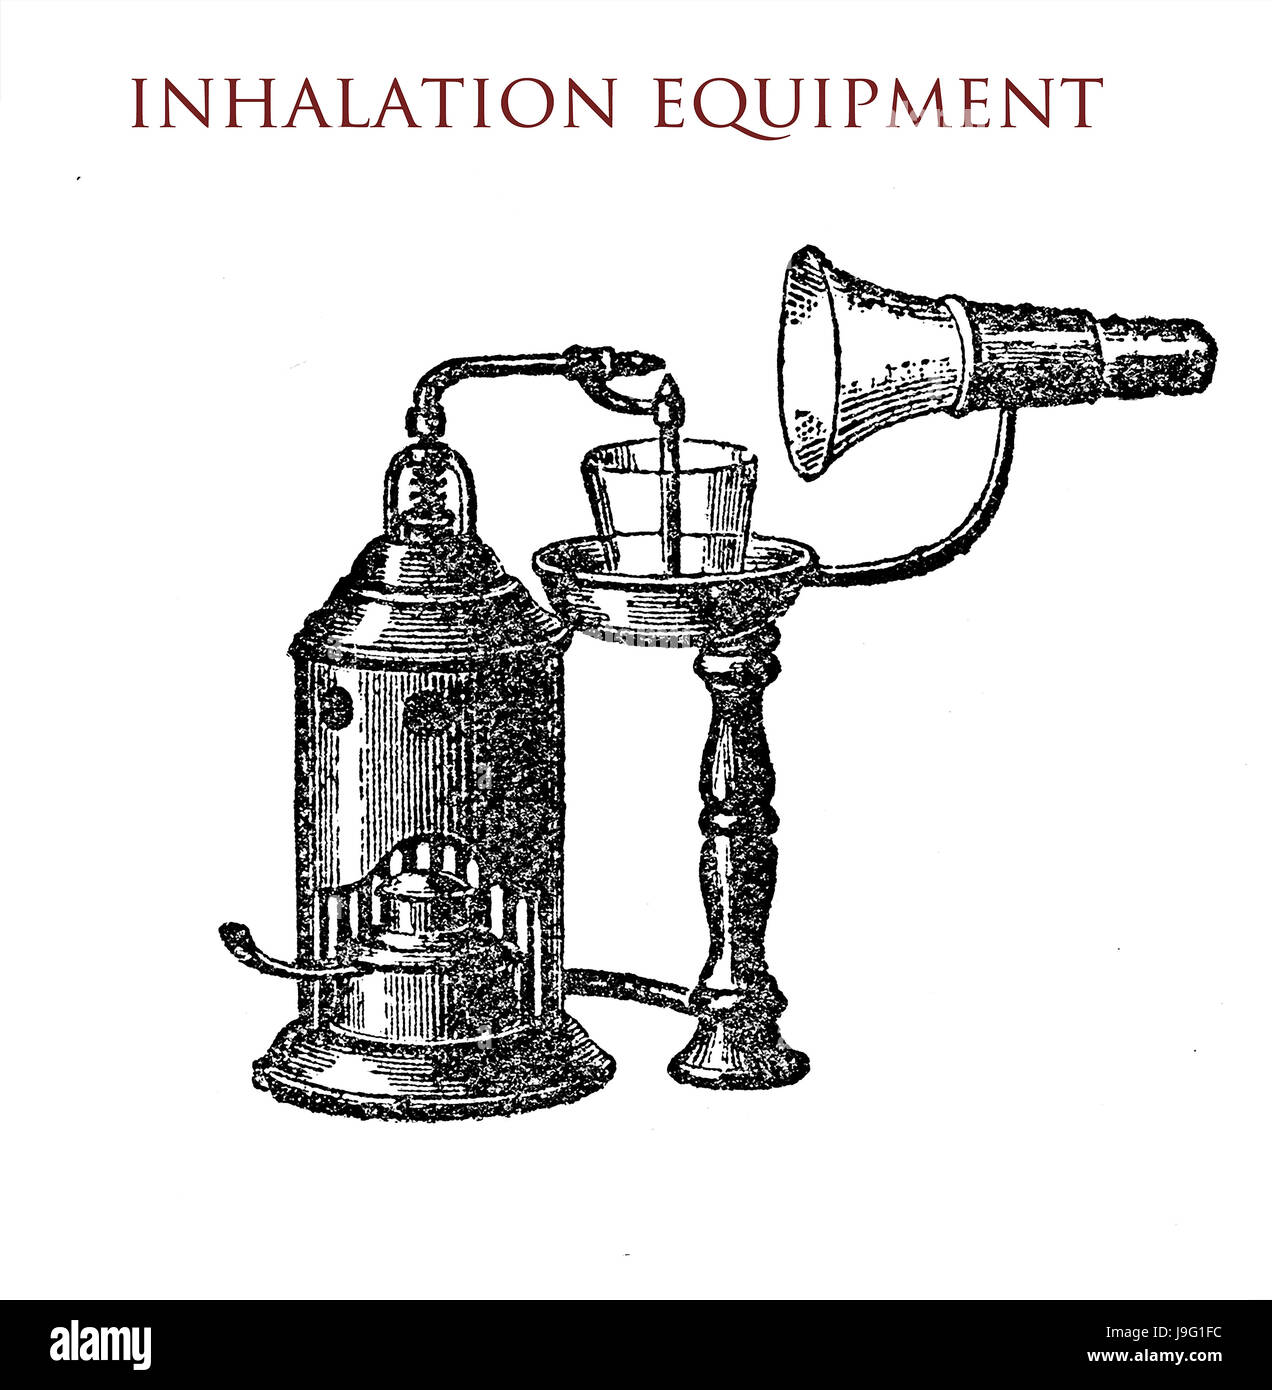 L'inhalation de l'équipement, vintage illustration Banque D'Images